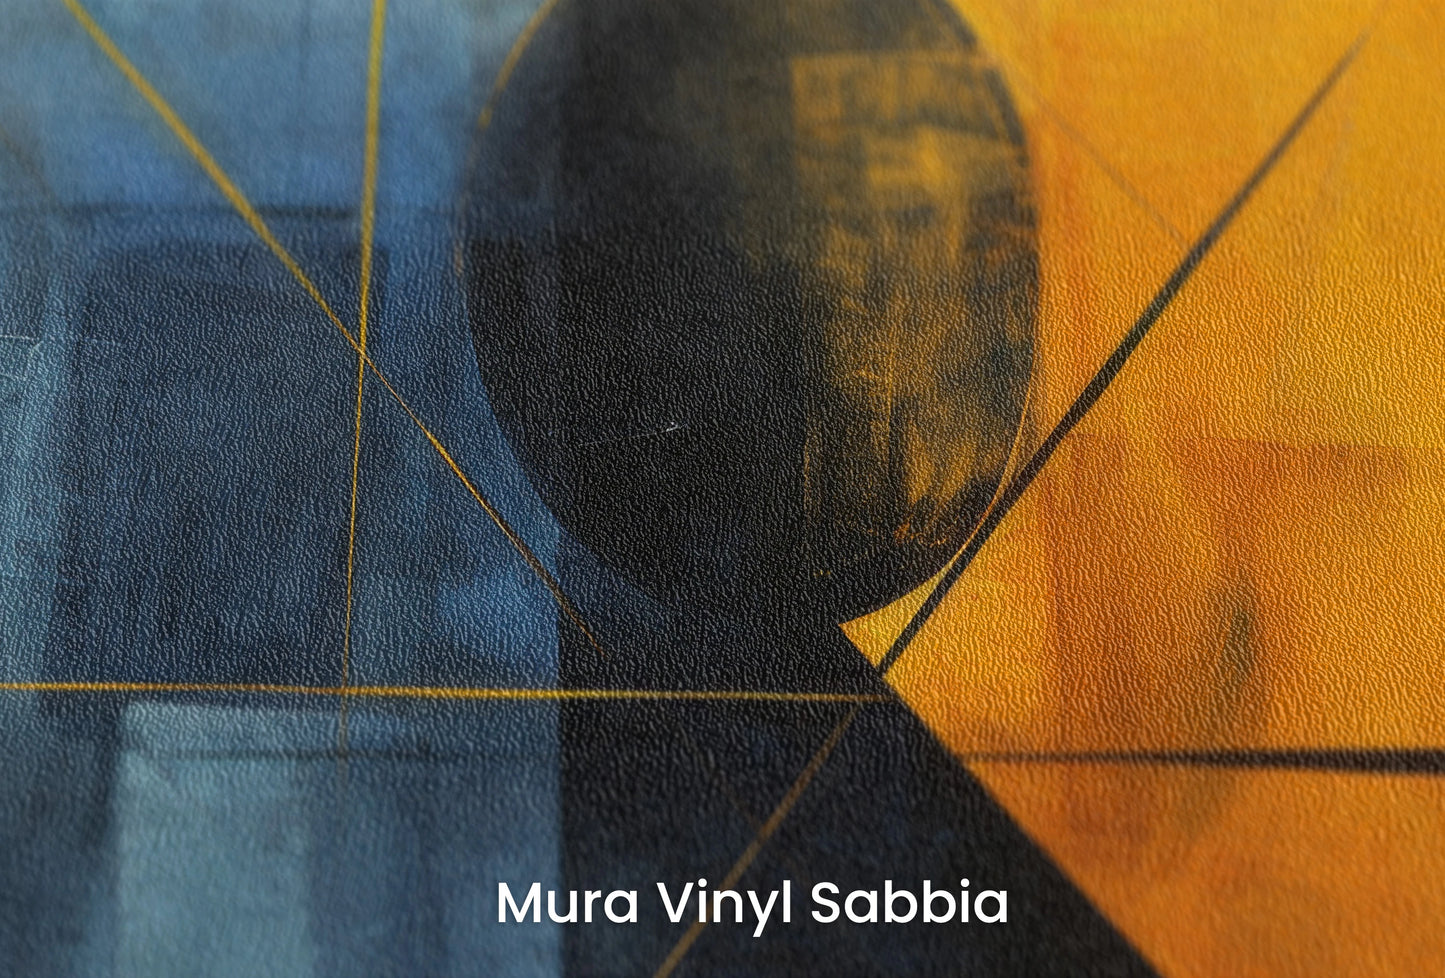 Zbliżenie na artystyczną fototapetę o nazwie Night's Embrace na podłożu Mura Vinyl Sabbia struktura grubego ziarna piasku.